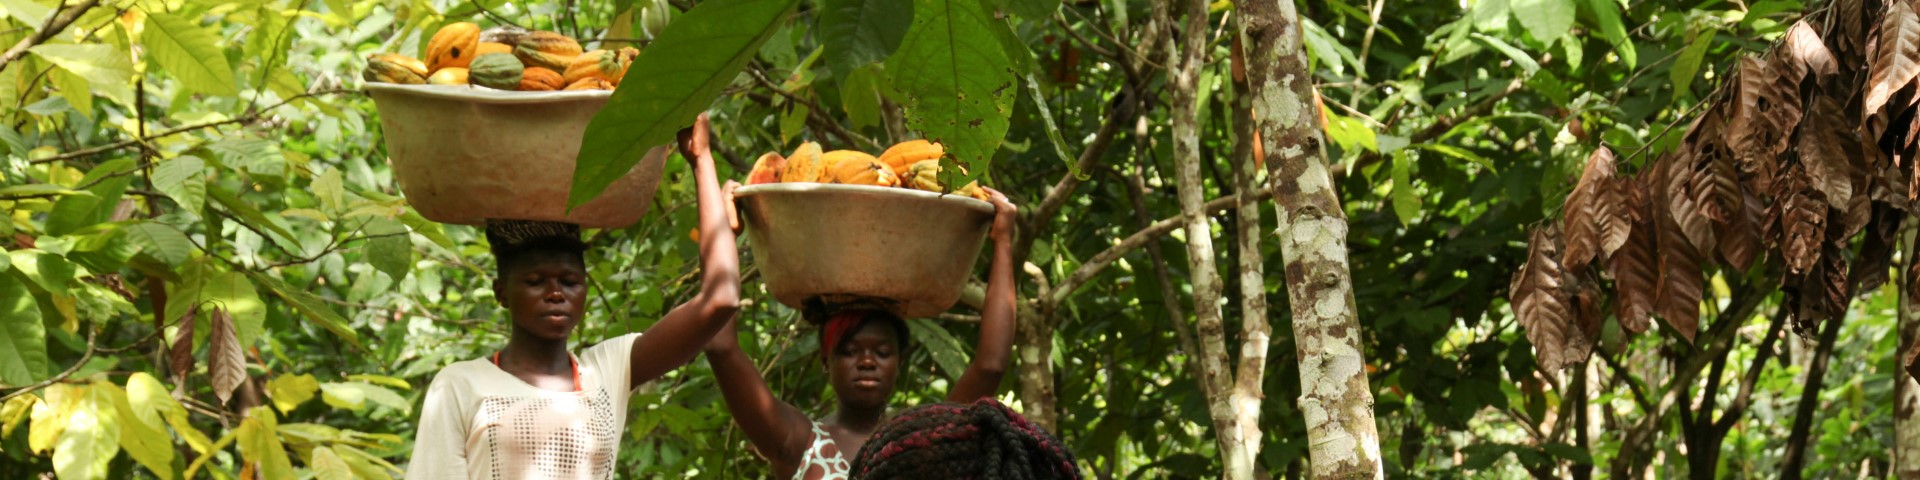 Zwei Frauen tragen große Körbe voller Kakaofrüchte auf ihren Köpfen. Copyright: GIZ